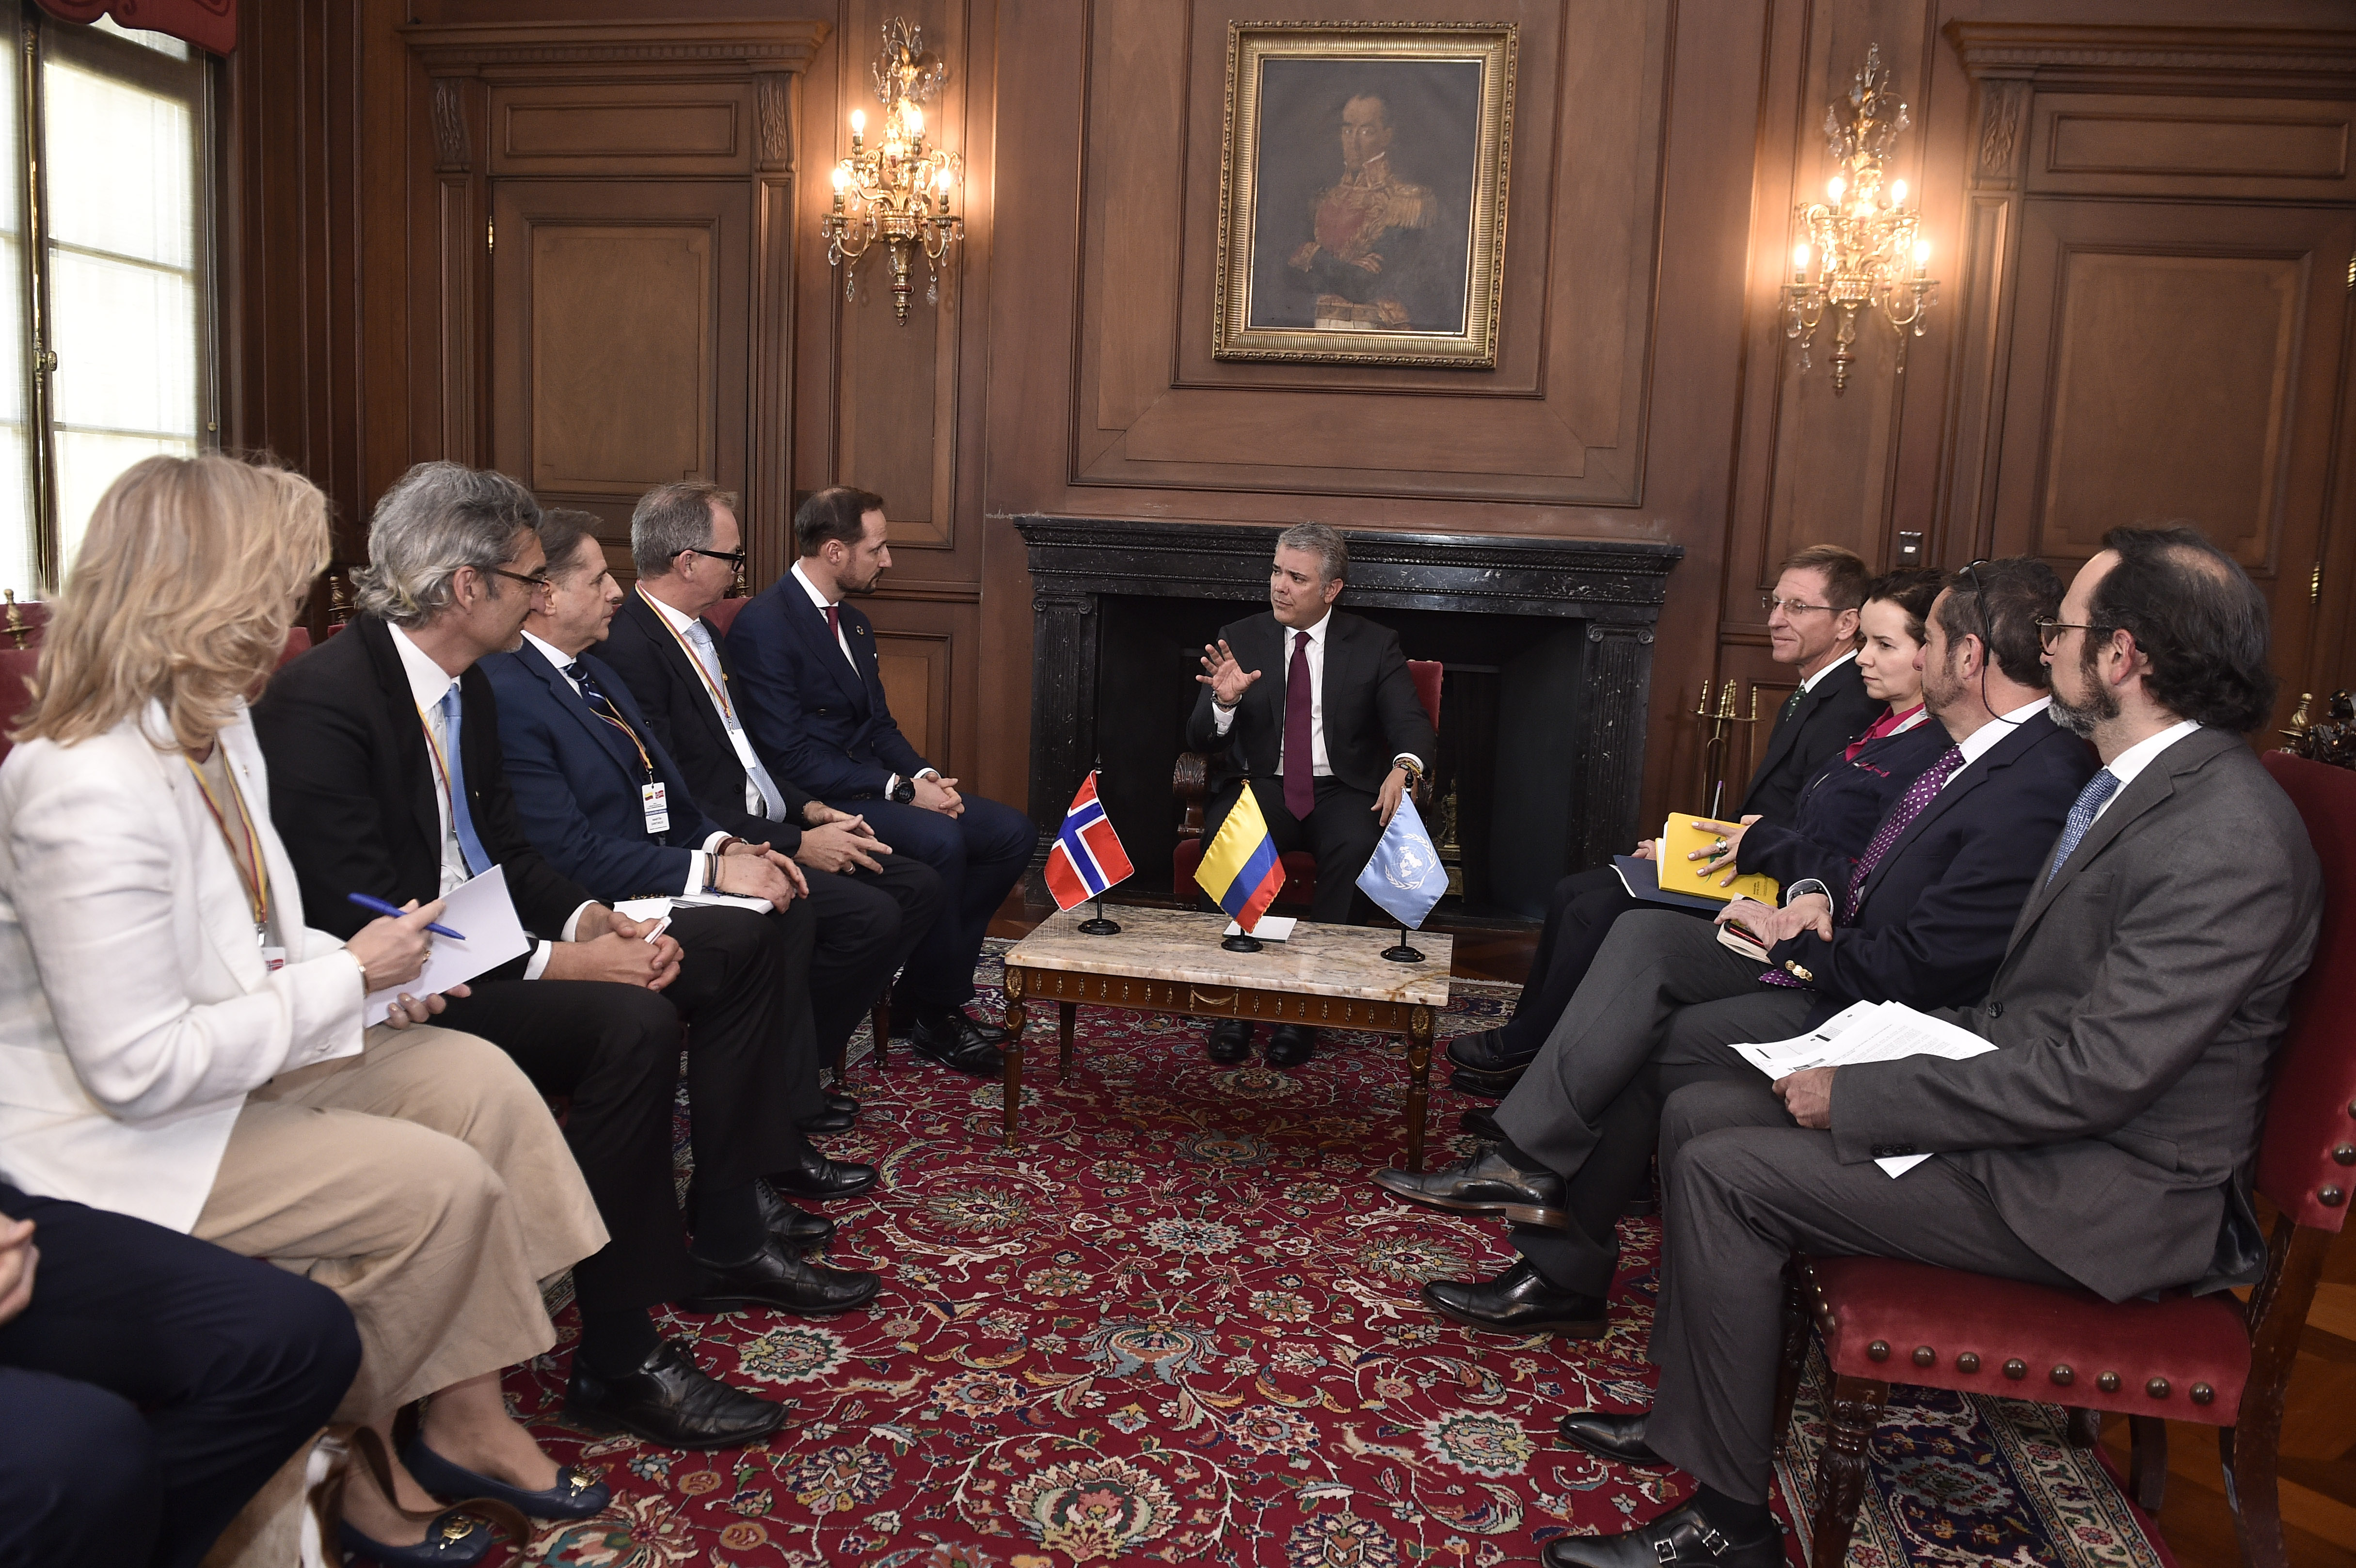 El Príncipe Haakon Magnus reiteró al Presidente Iván Duque el compromiso del PNUD y de Noruega para apoyar el proceso de estabilización como paso clave para la consolidación del desarrollo sostenible en Colombia